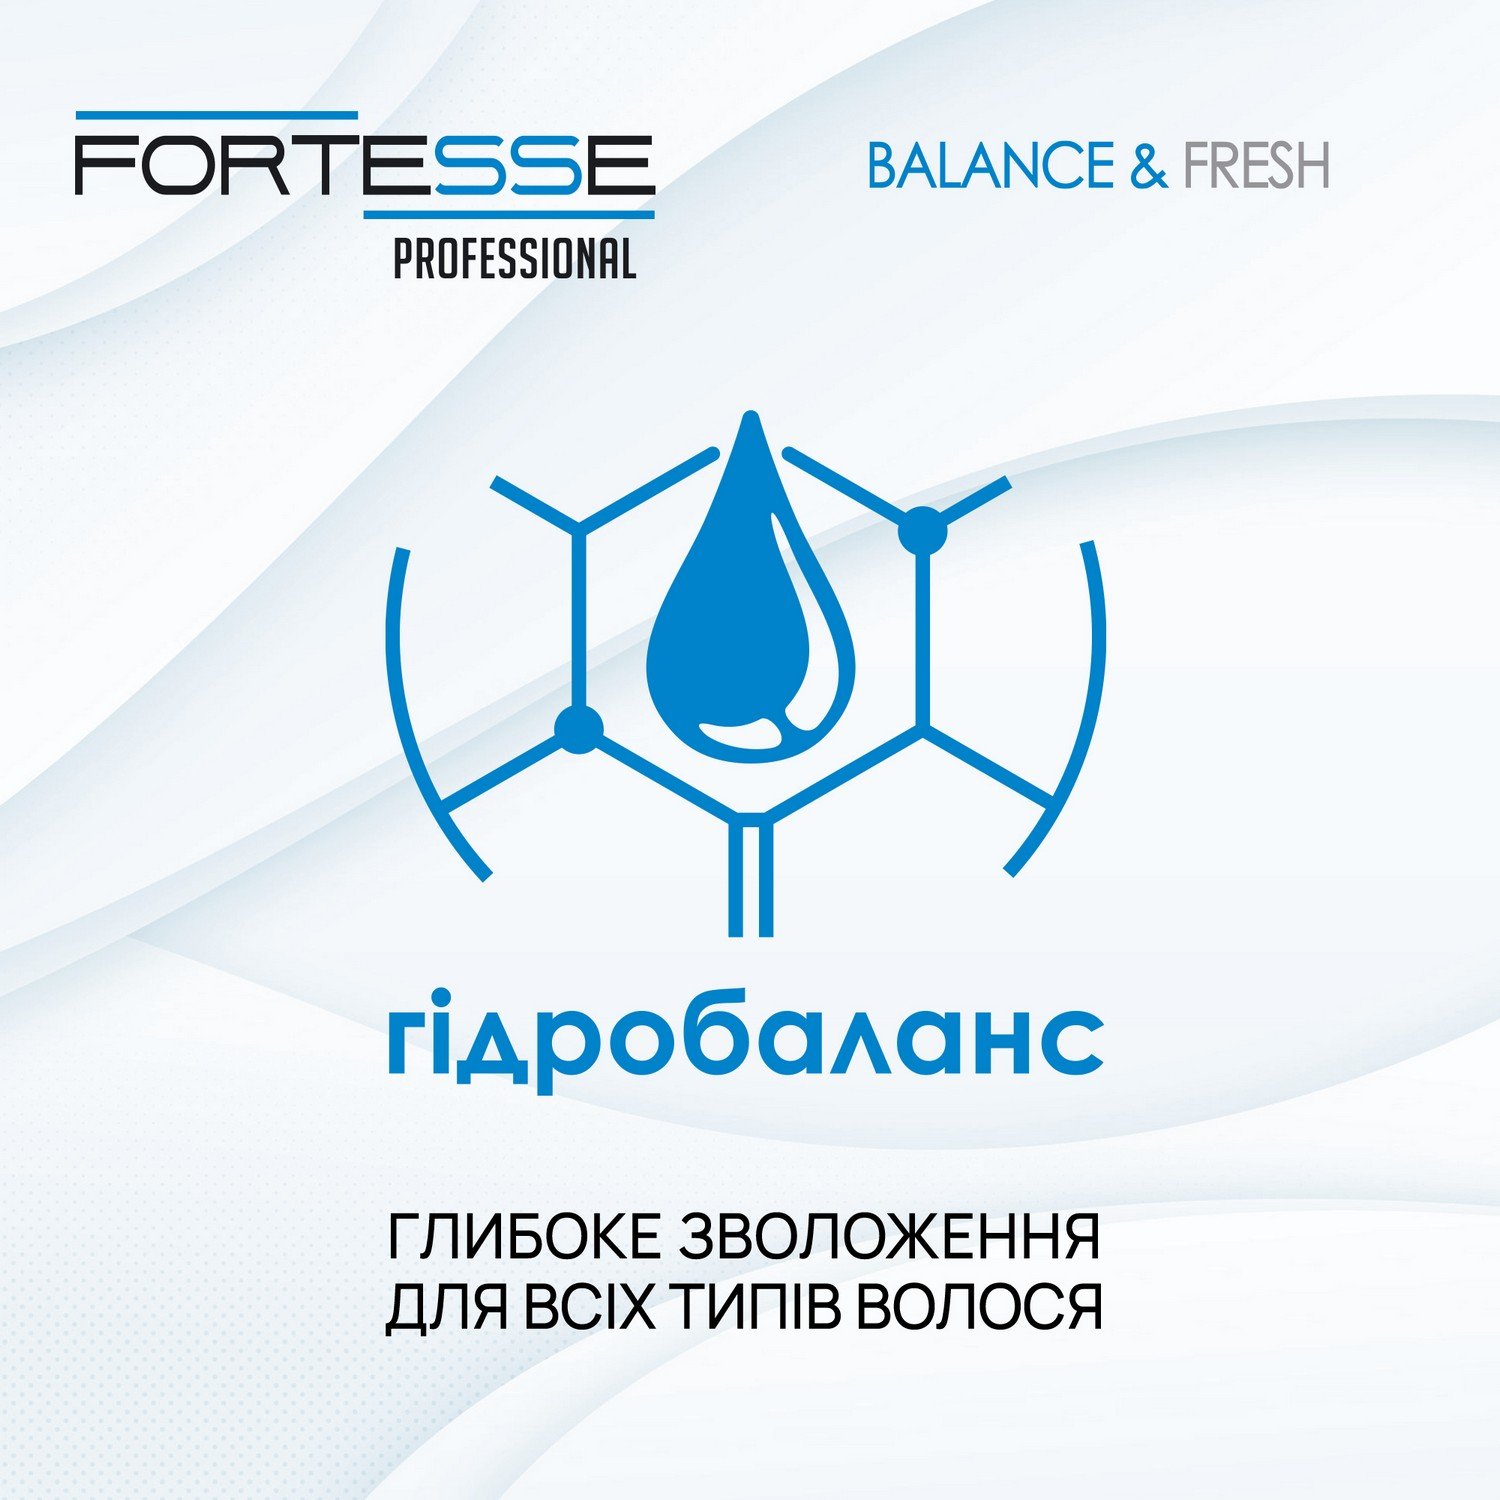 Шампунь Fortesse Professional Balance & Fresh, для всех типов волос, 400 мл - фото 4